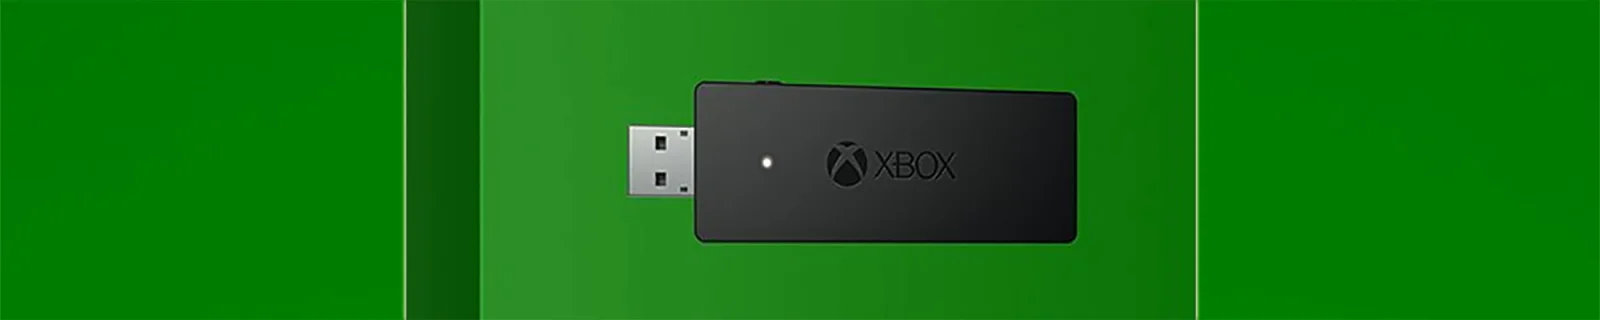 Xbox PC专用无线接收器10月20日发售